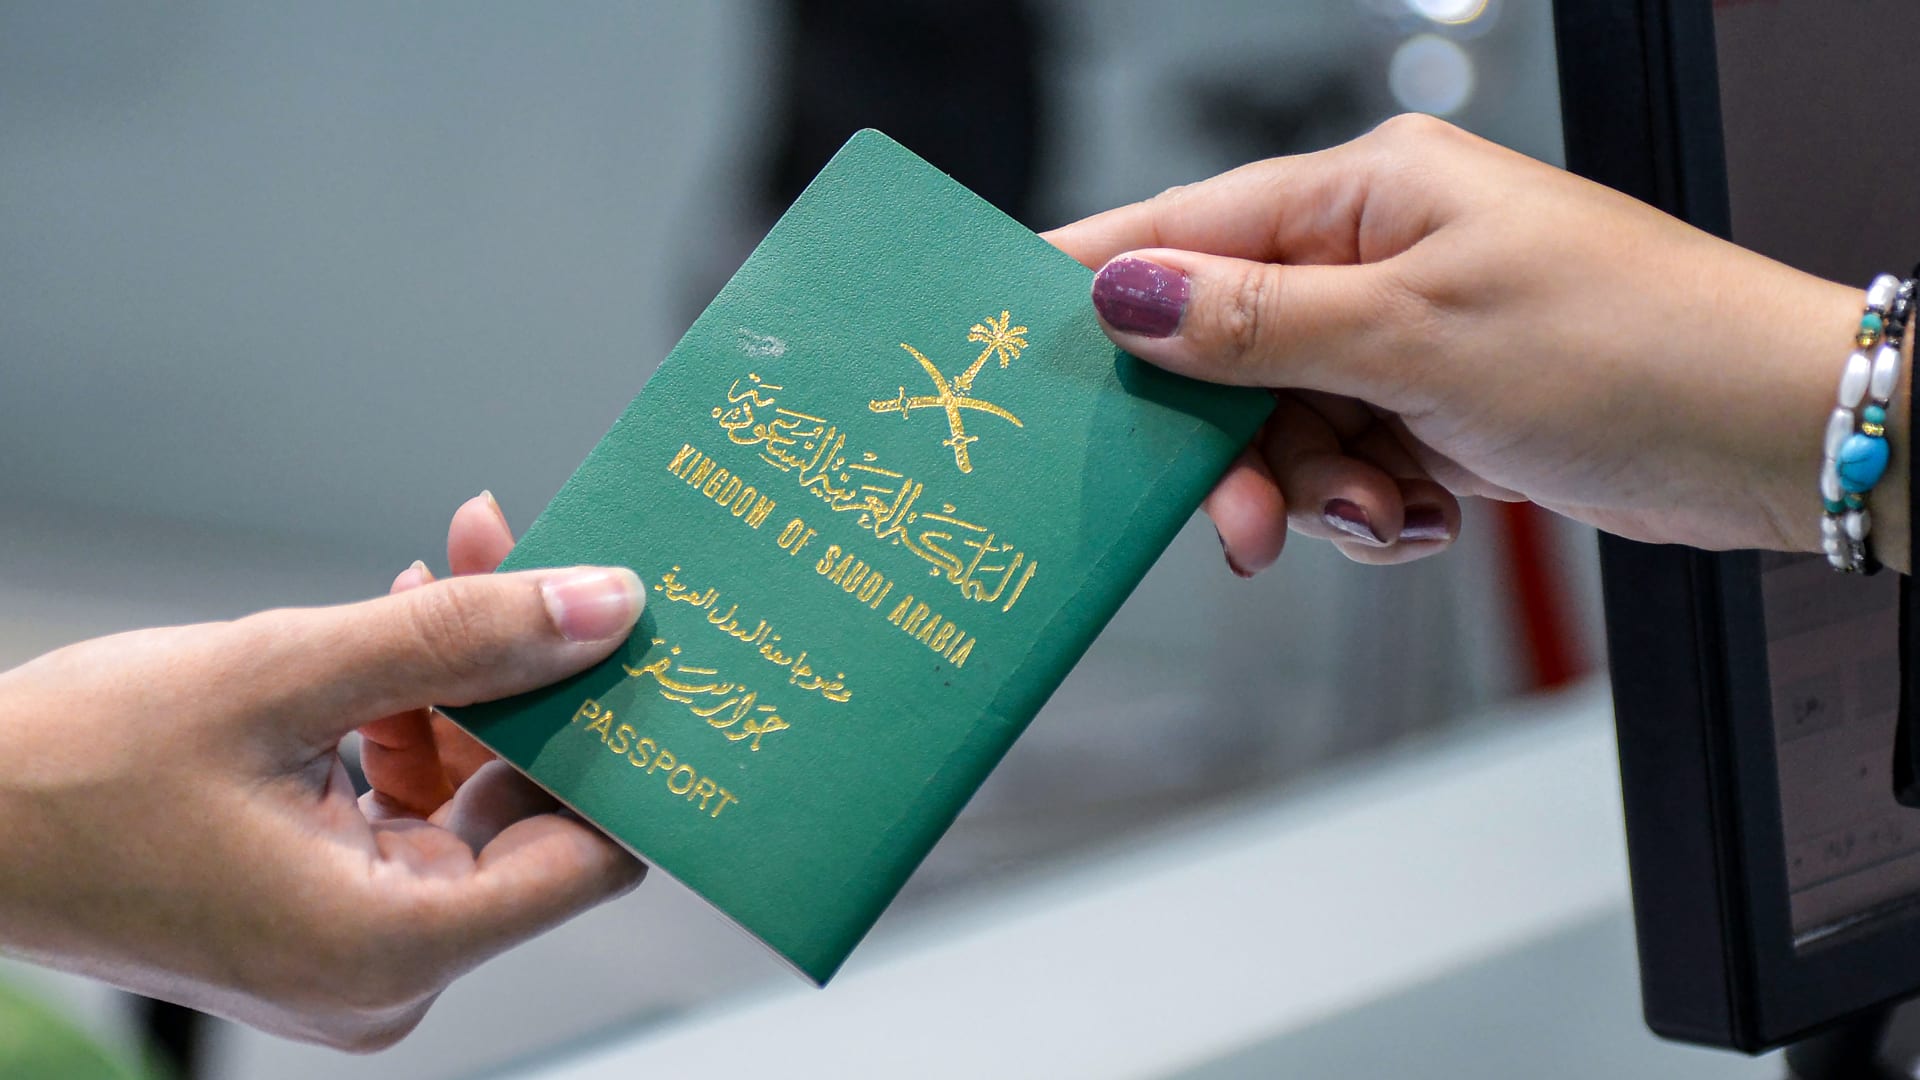 جواز السفر السعودي 